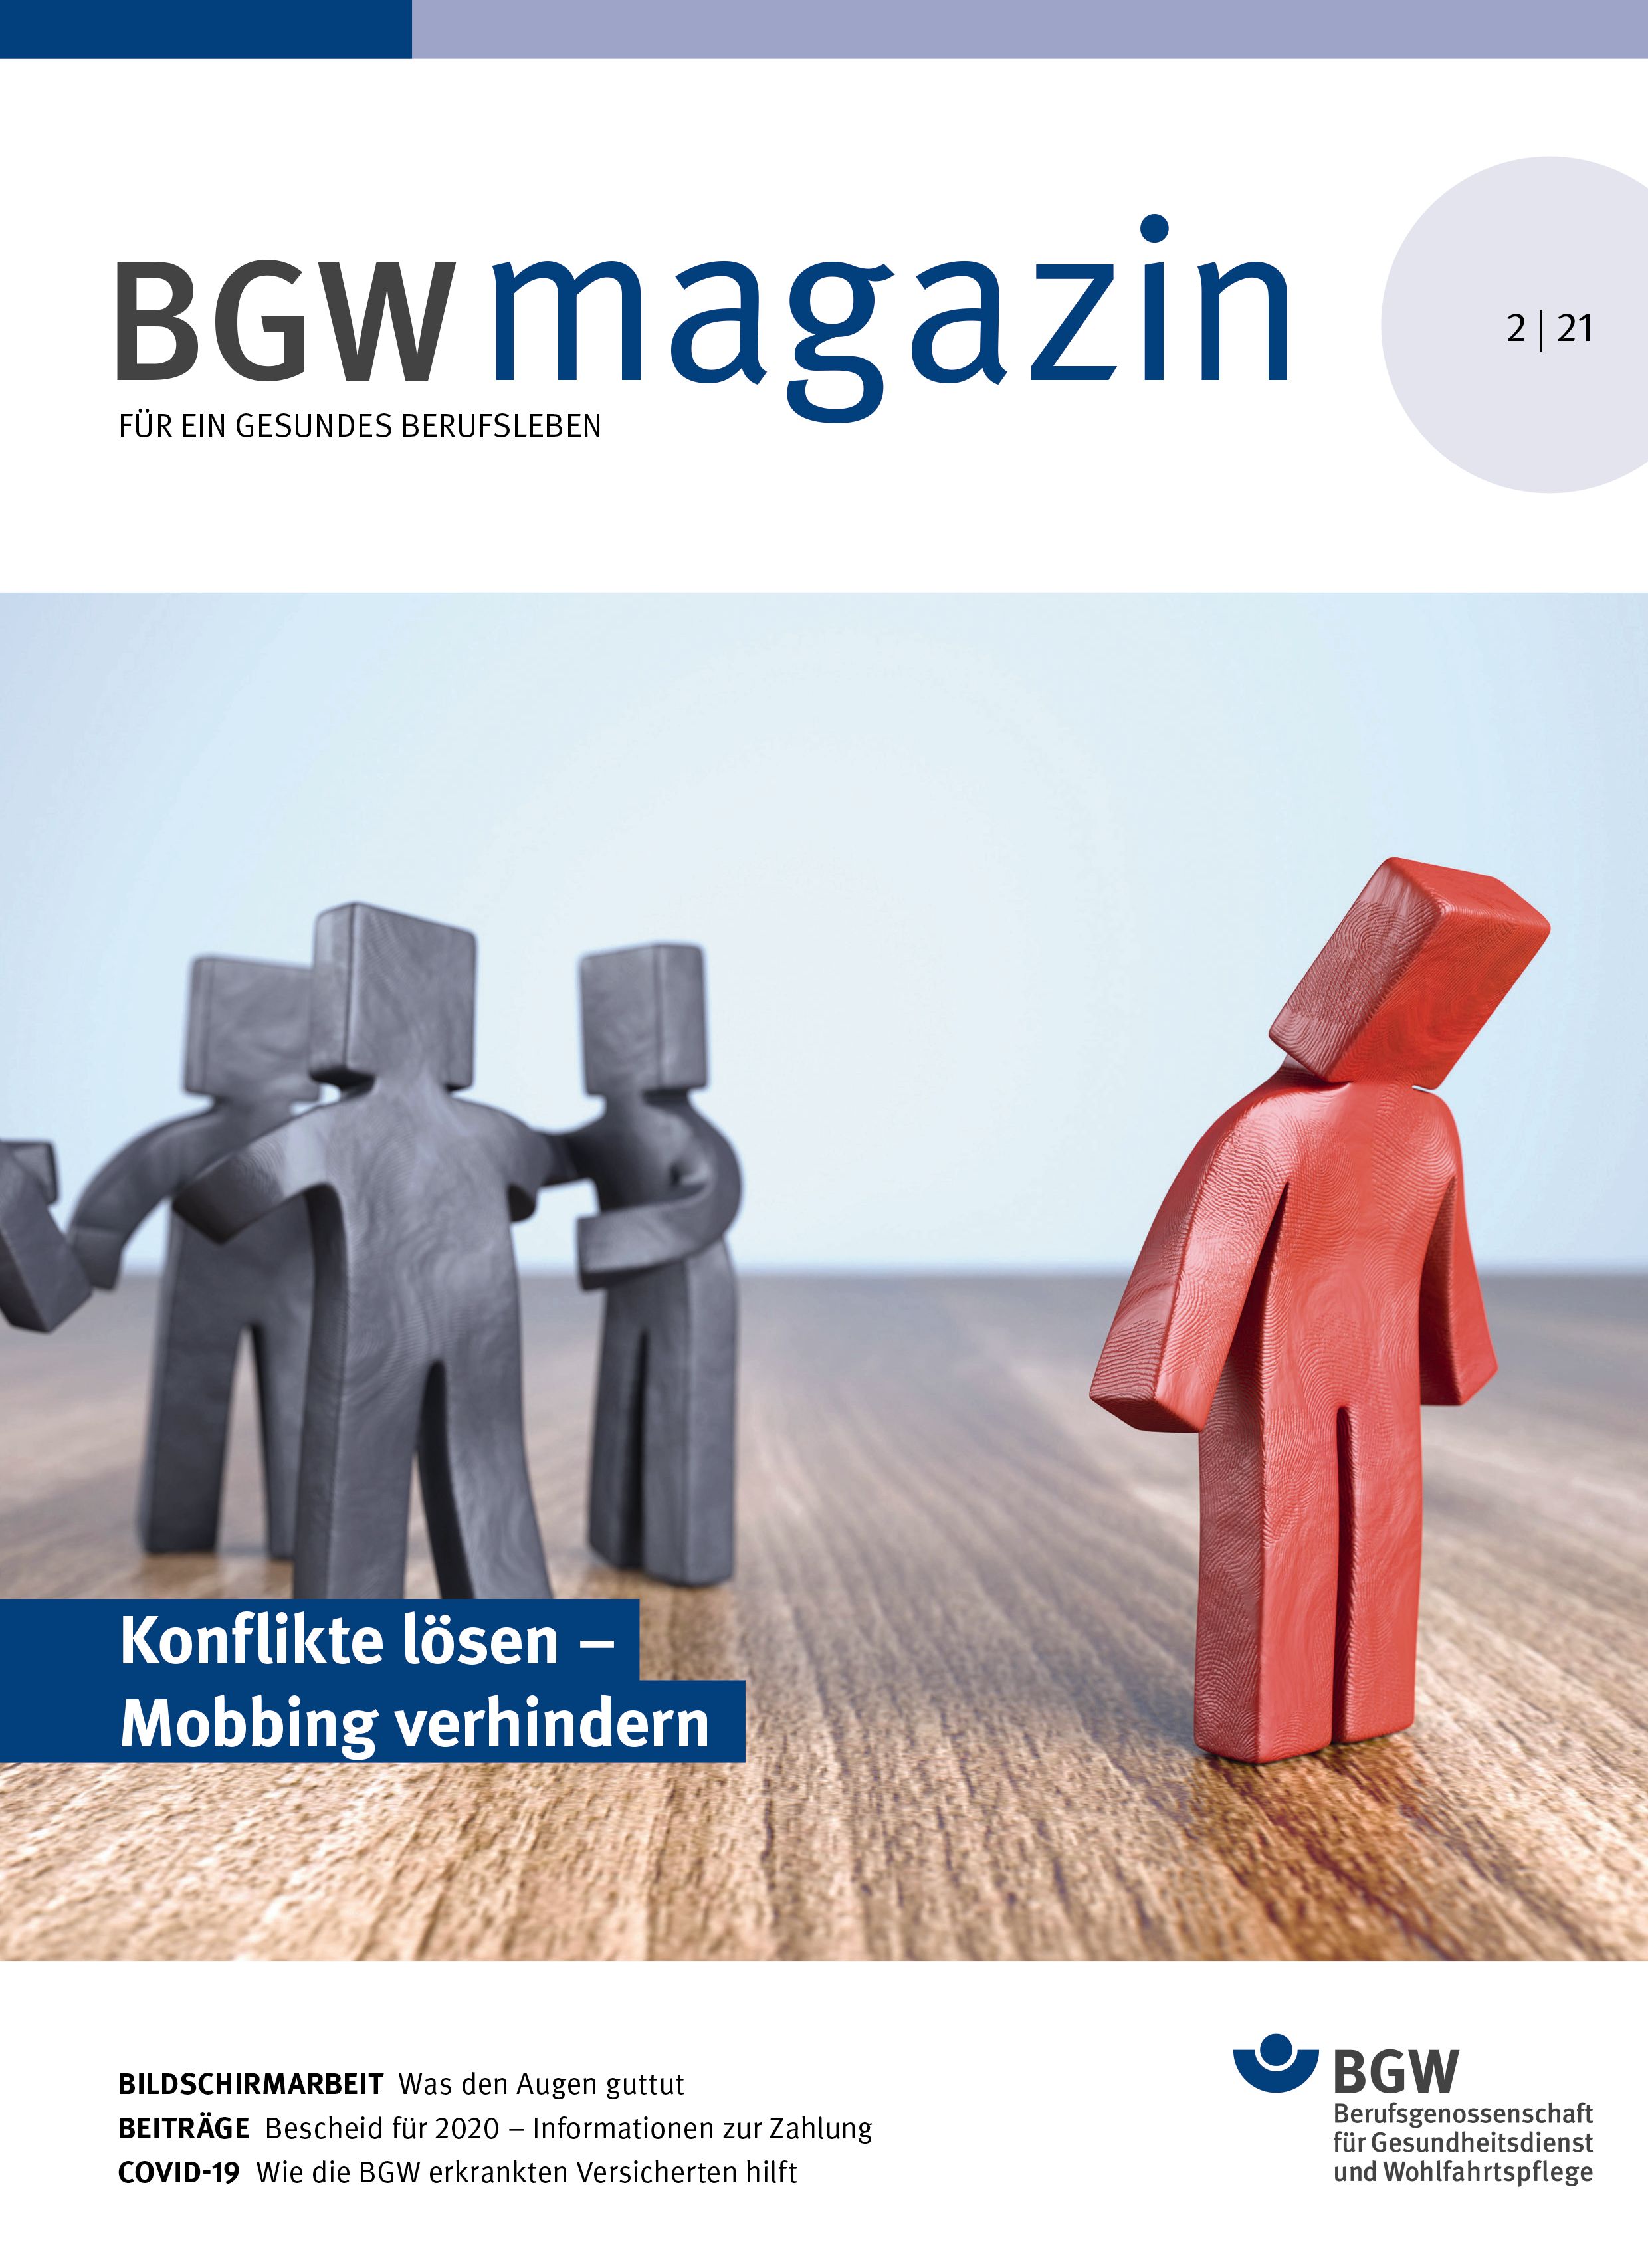 Titelseite des BGW magazins, Ausgabe 2/2021, mit dem Titelthema "Konflikte lösen - Mobbing verhindern"